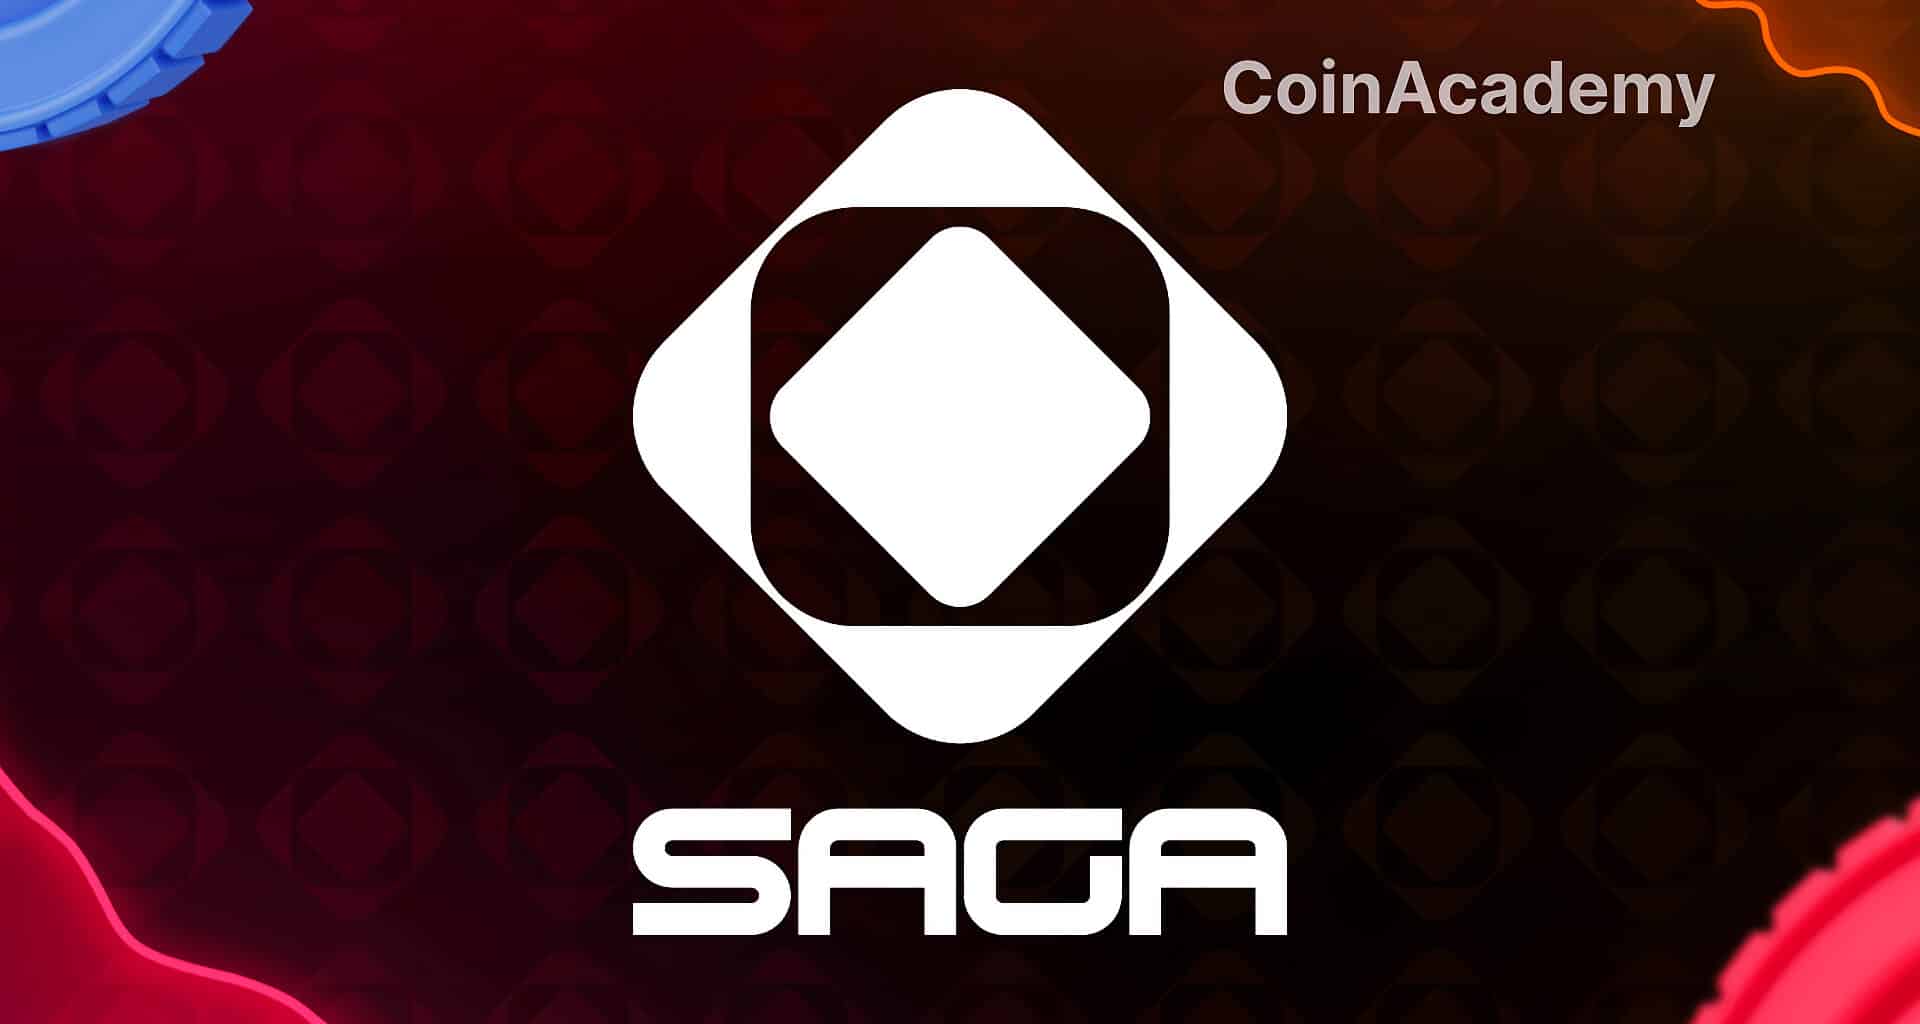 SAGA blockchain